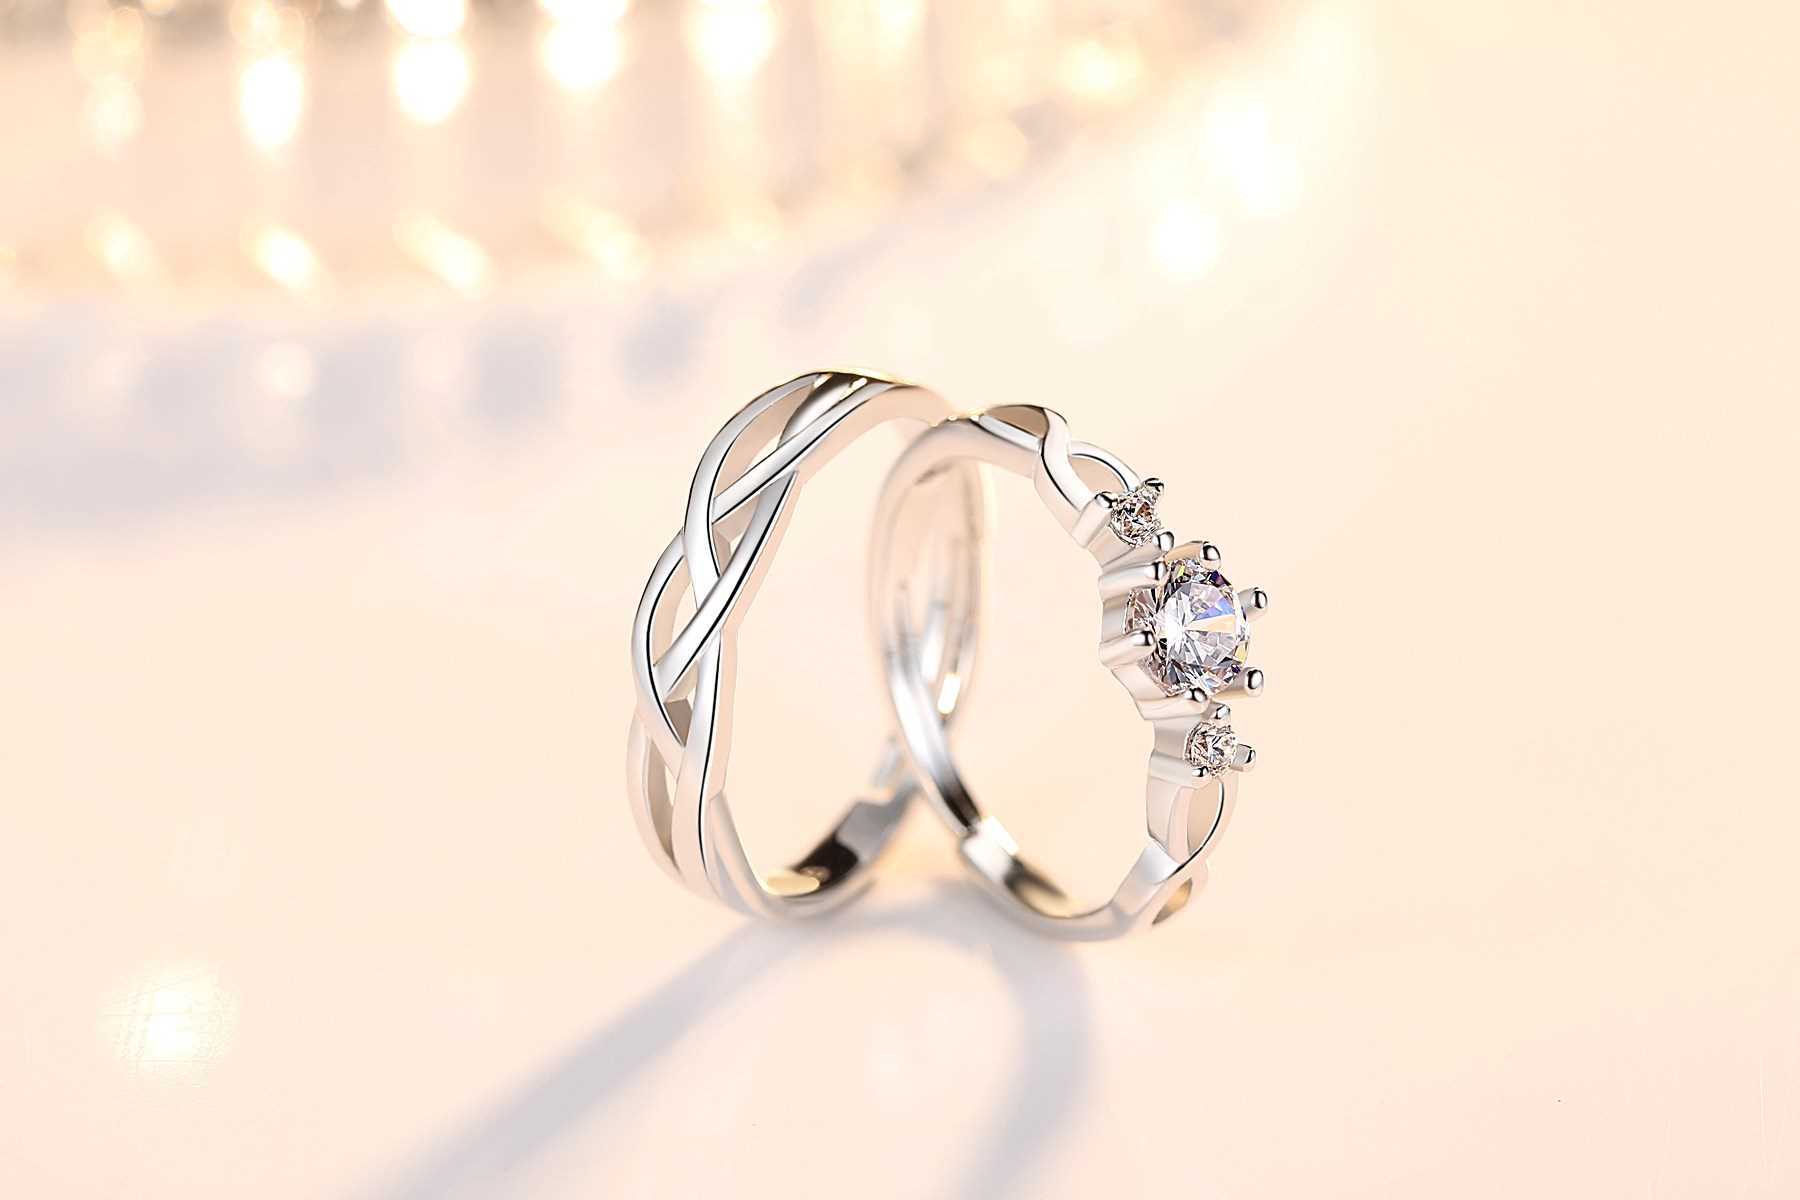 Cặp nhẫn Bạc Panmila - Nhẫn đôi tình yêu (TS-ND-A3)